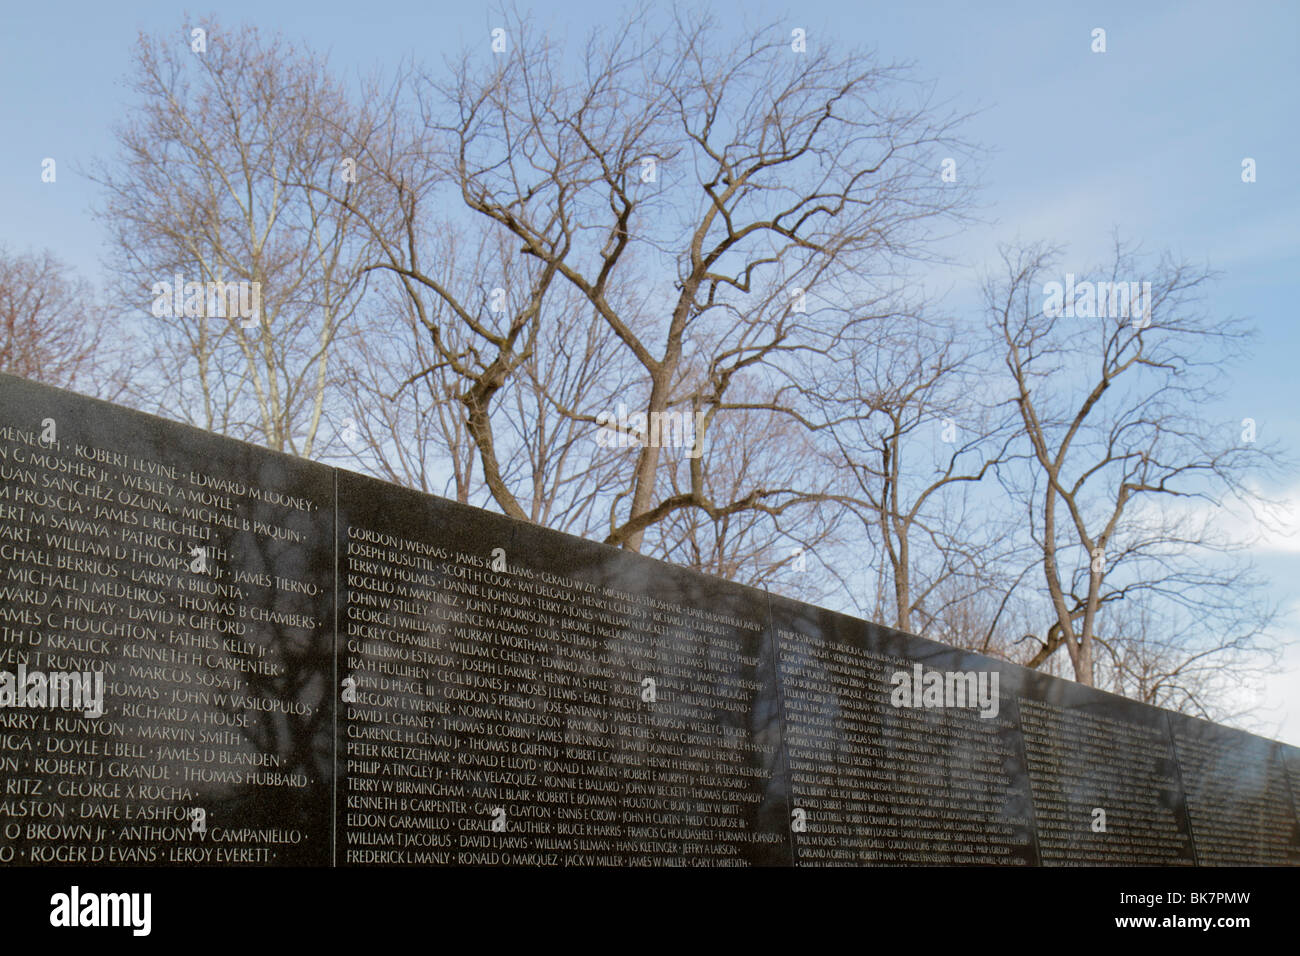 Washington DC, National Mall & Memorial Parks, Vietnam Veterans Memorial Wall, Guerra de Vietnam, monumento, arquitecto Maya Lin. Soldado muerto, nombres, héroe, árbol, wi Foto de stock